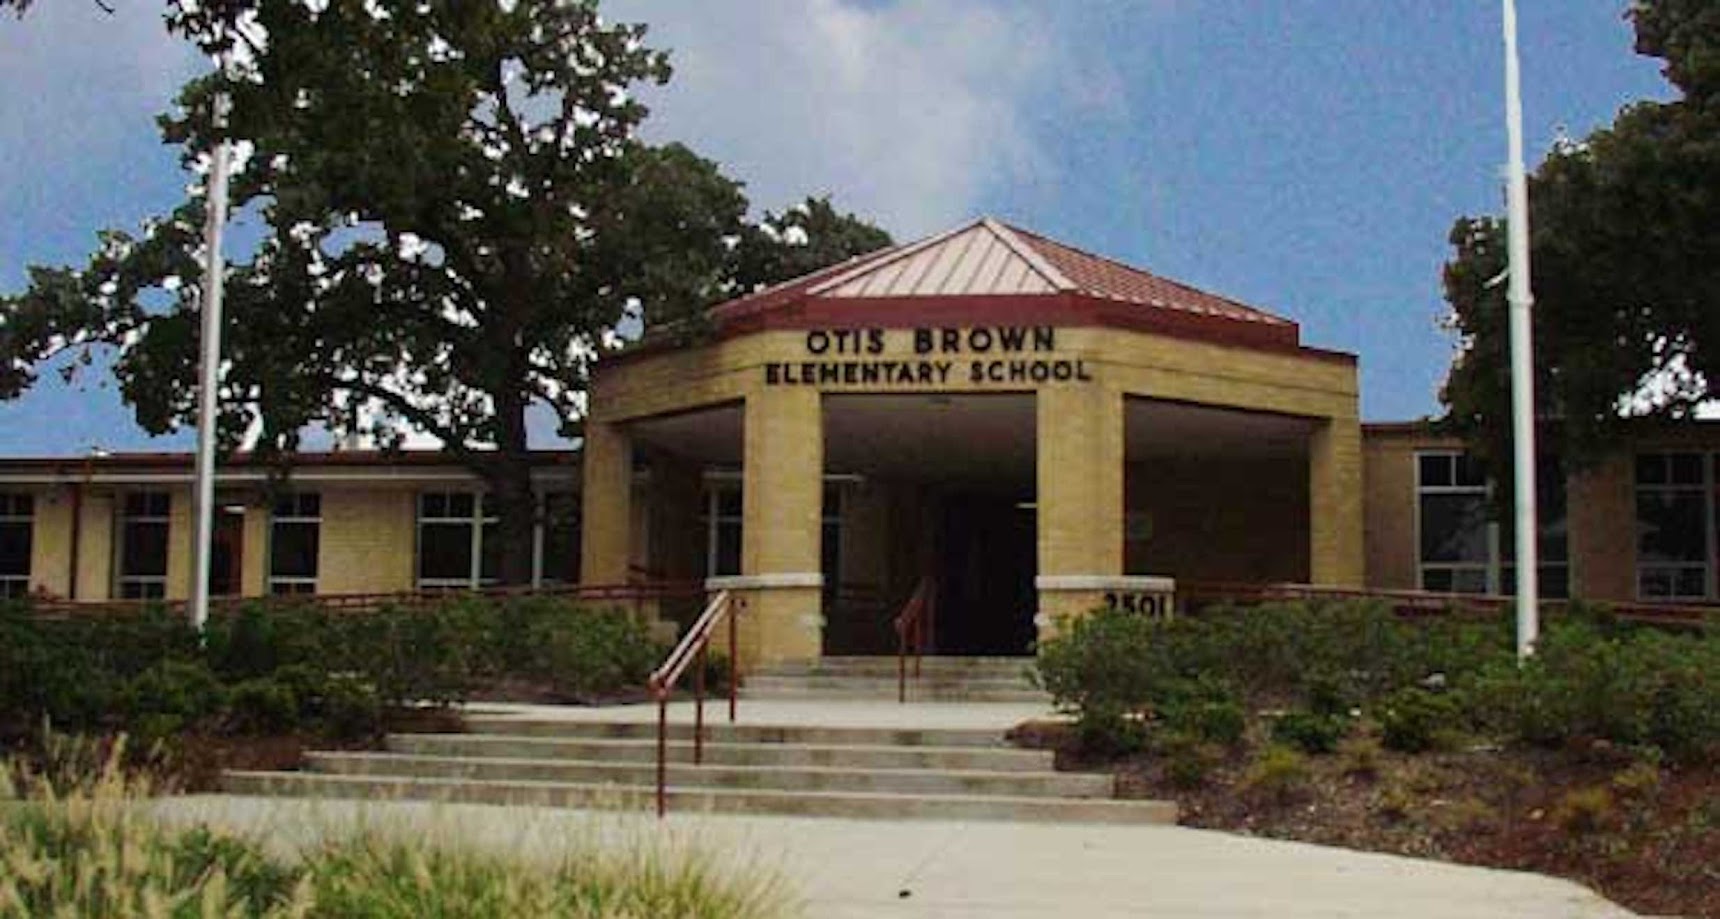 Otis Brown Elementary School